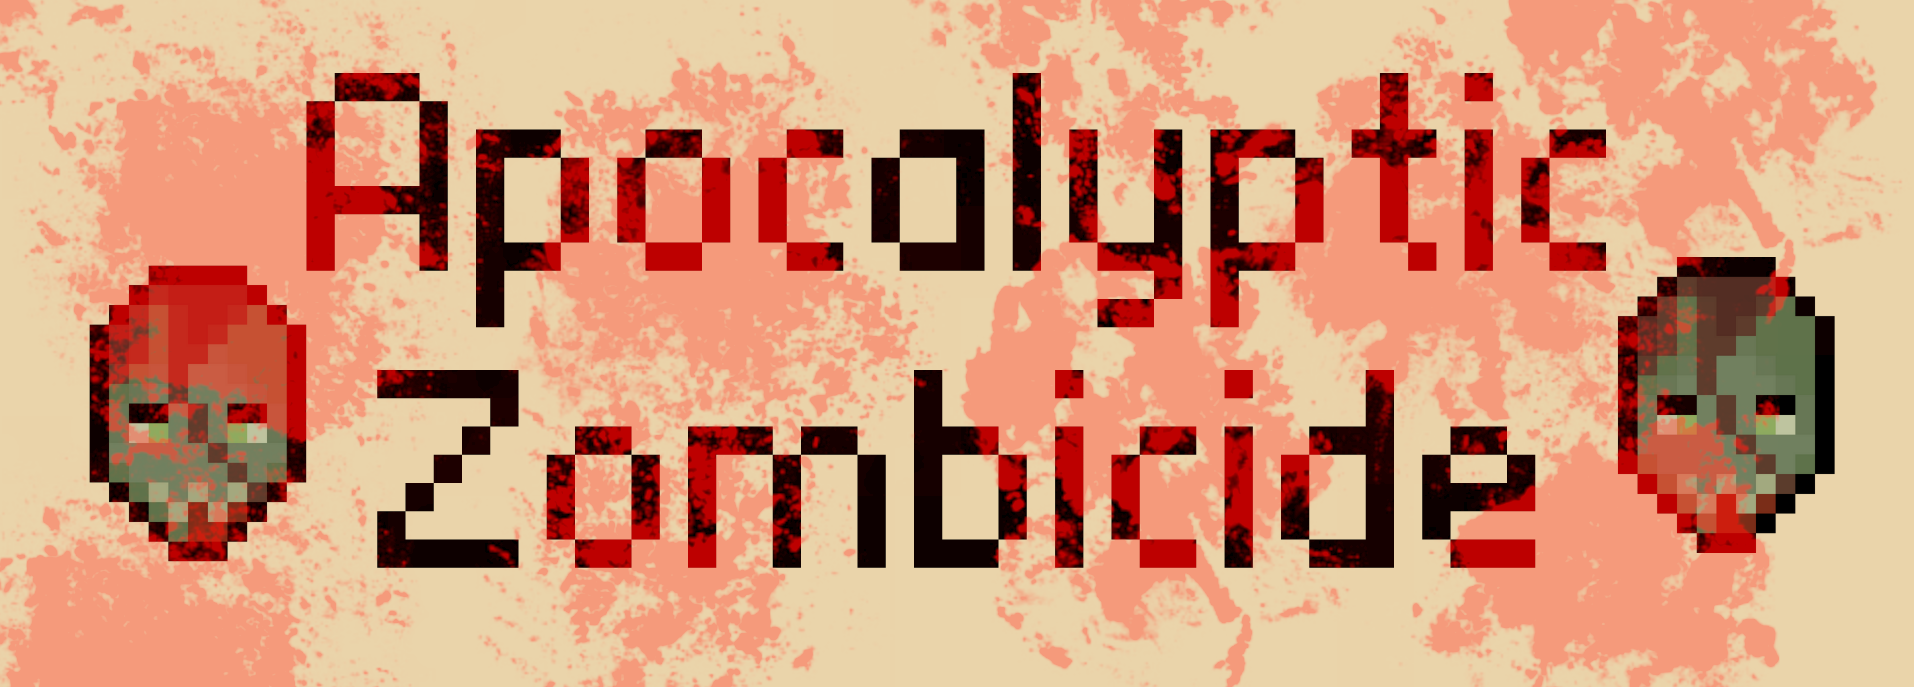 Apocalyptic Zombicide